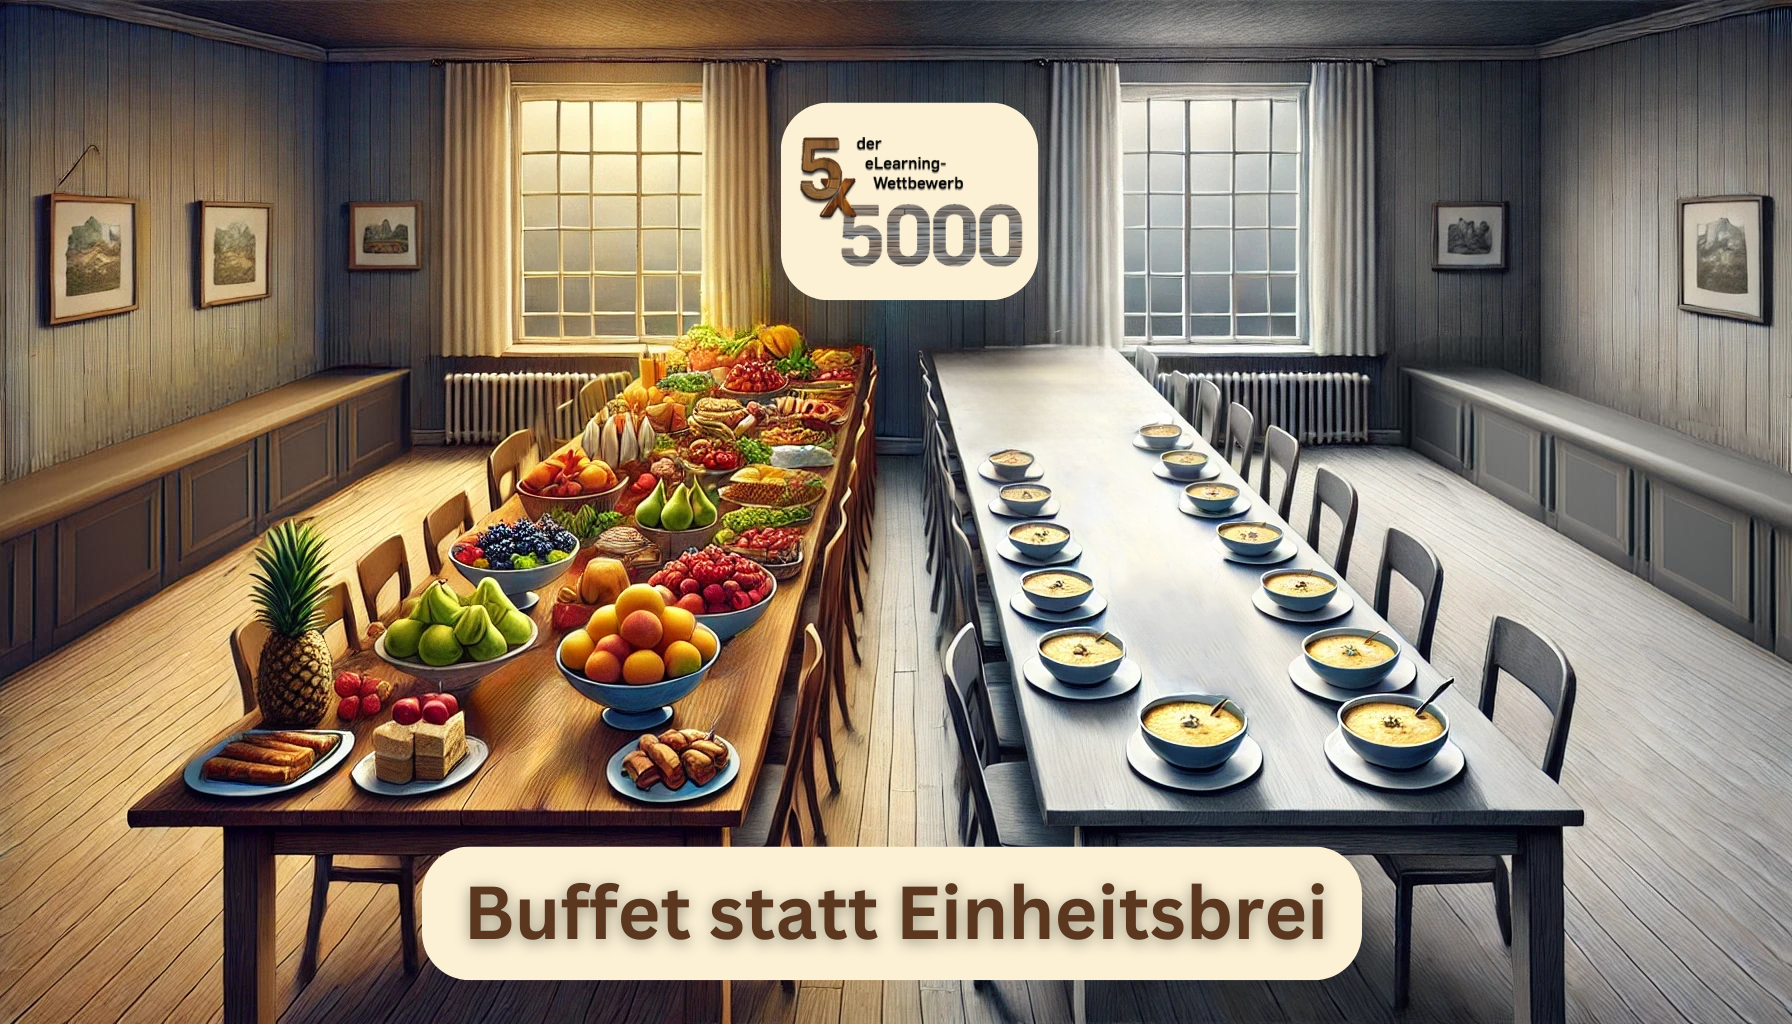 Bild zur Illustration des 5x5000 eLearning-Wettbewerbs-Mottos "Buffet statt Einheitsbrei."